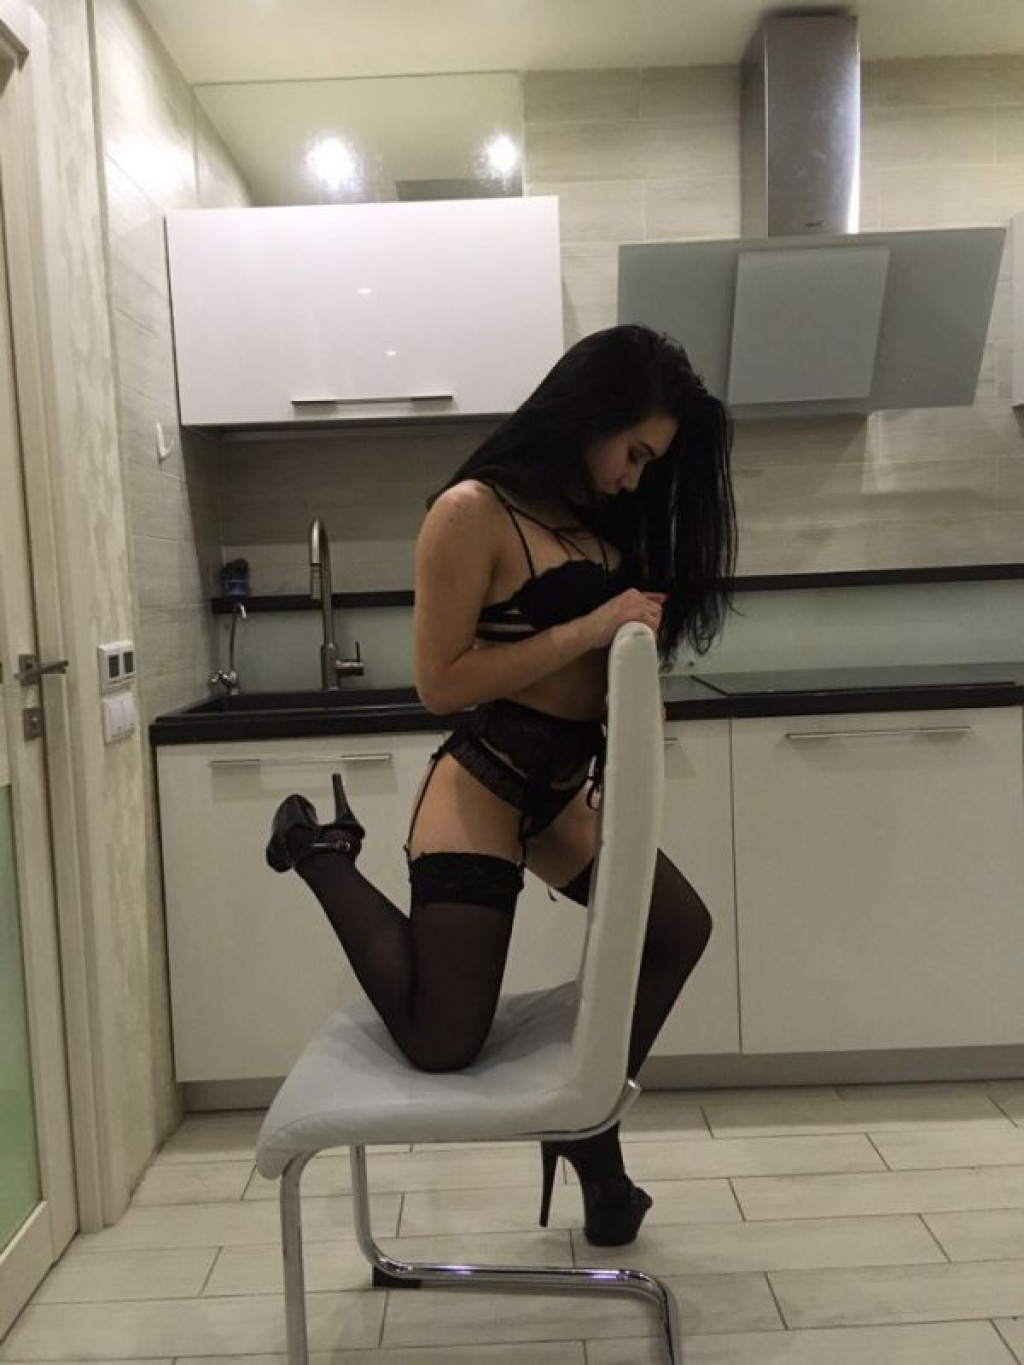 Рита: Проститутка-индивидуалка в Екатеринбурге